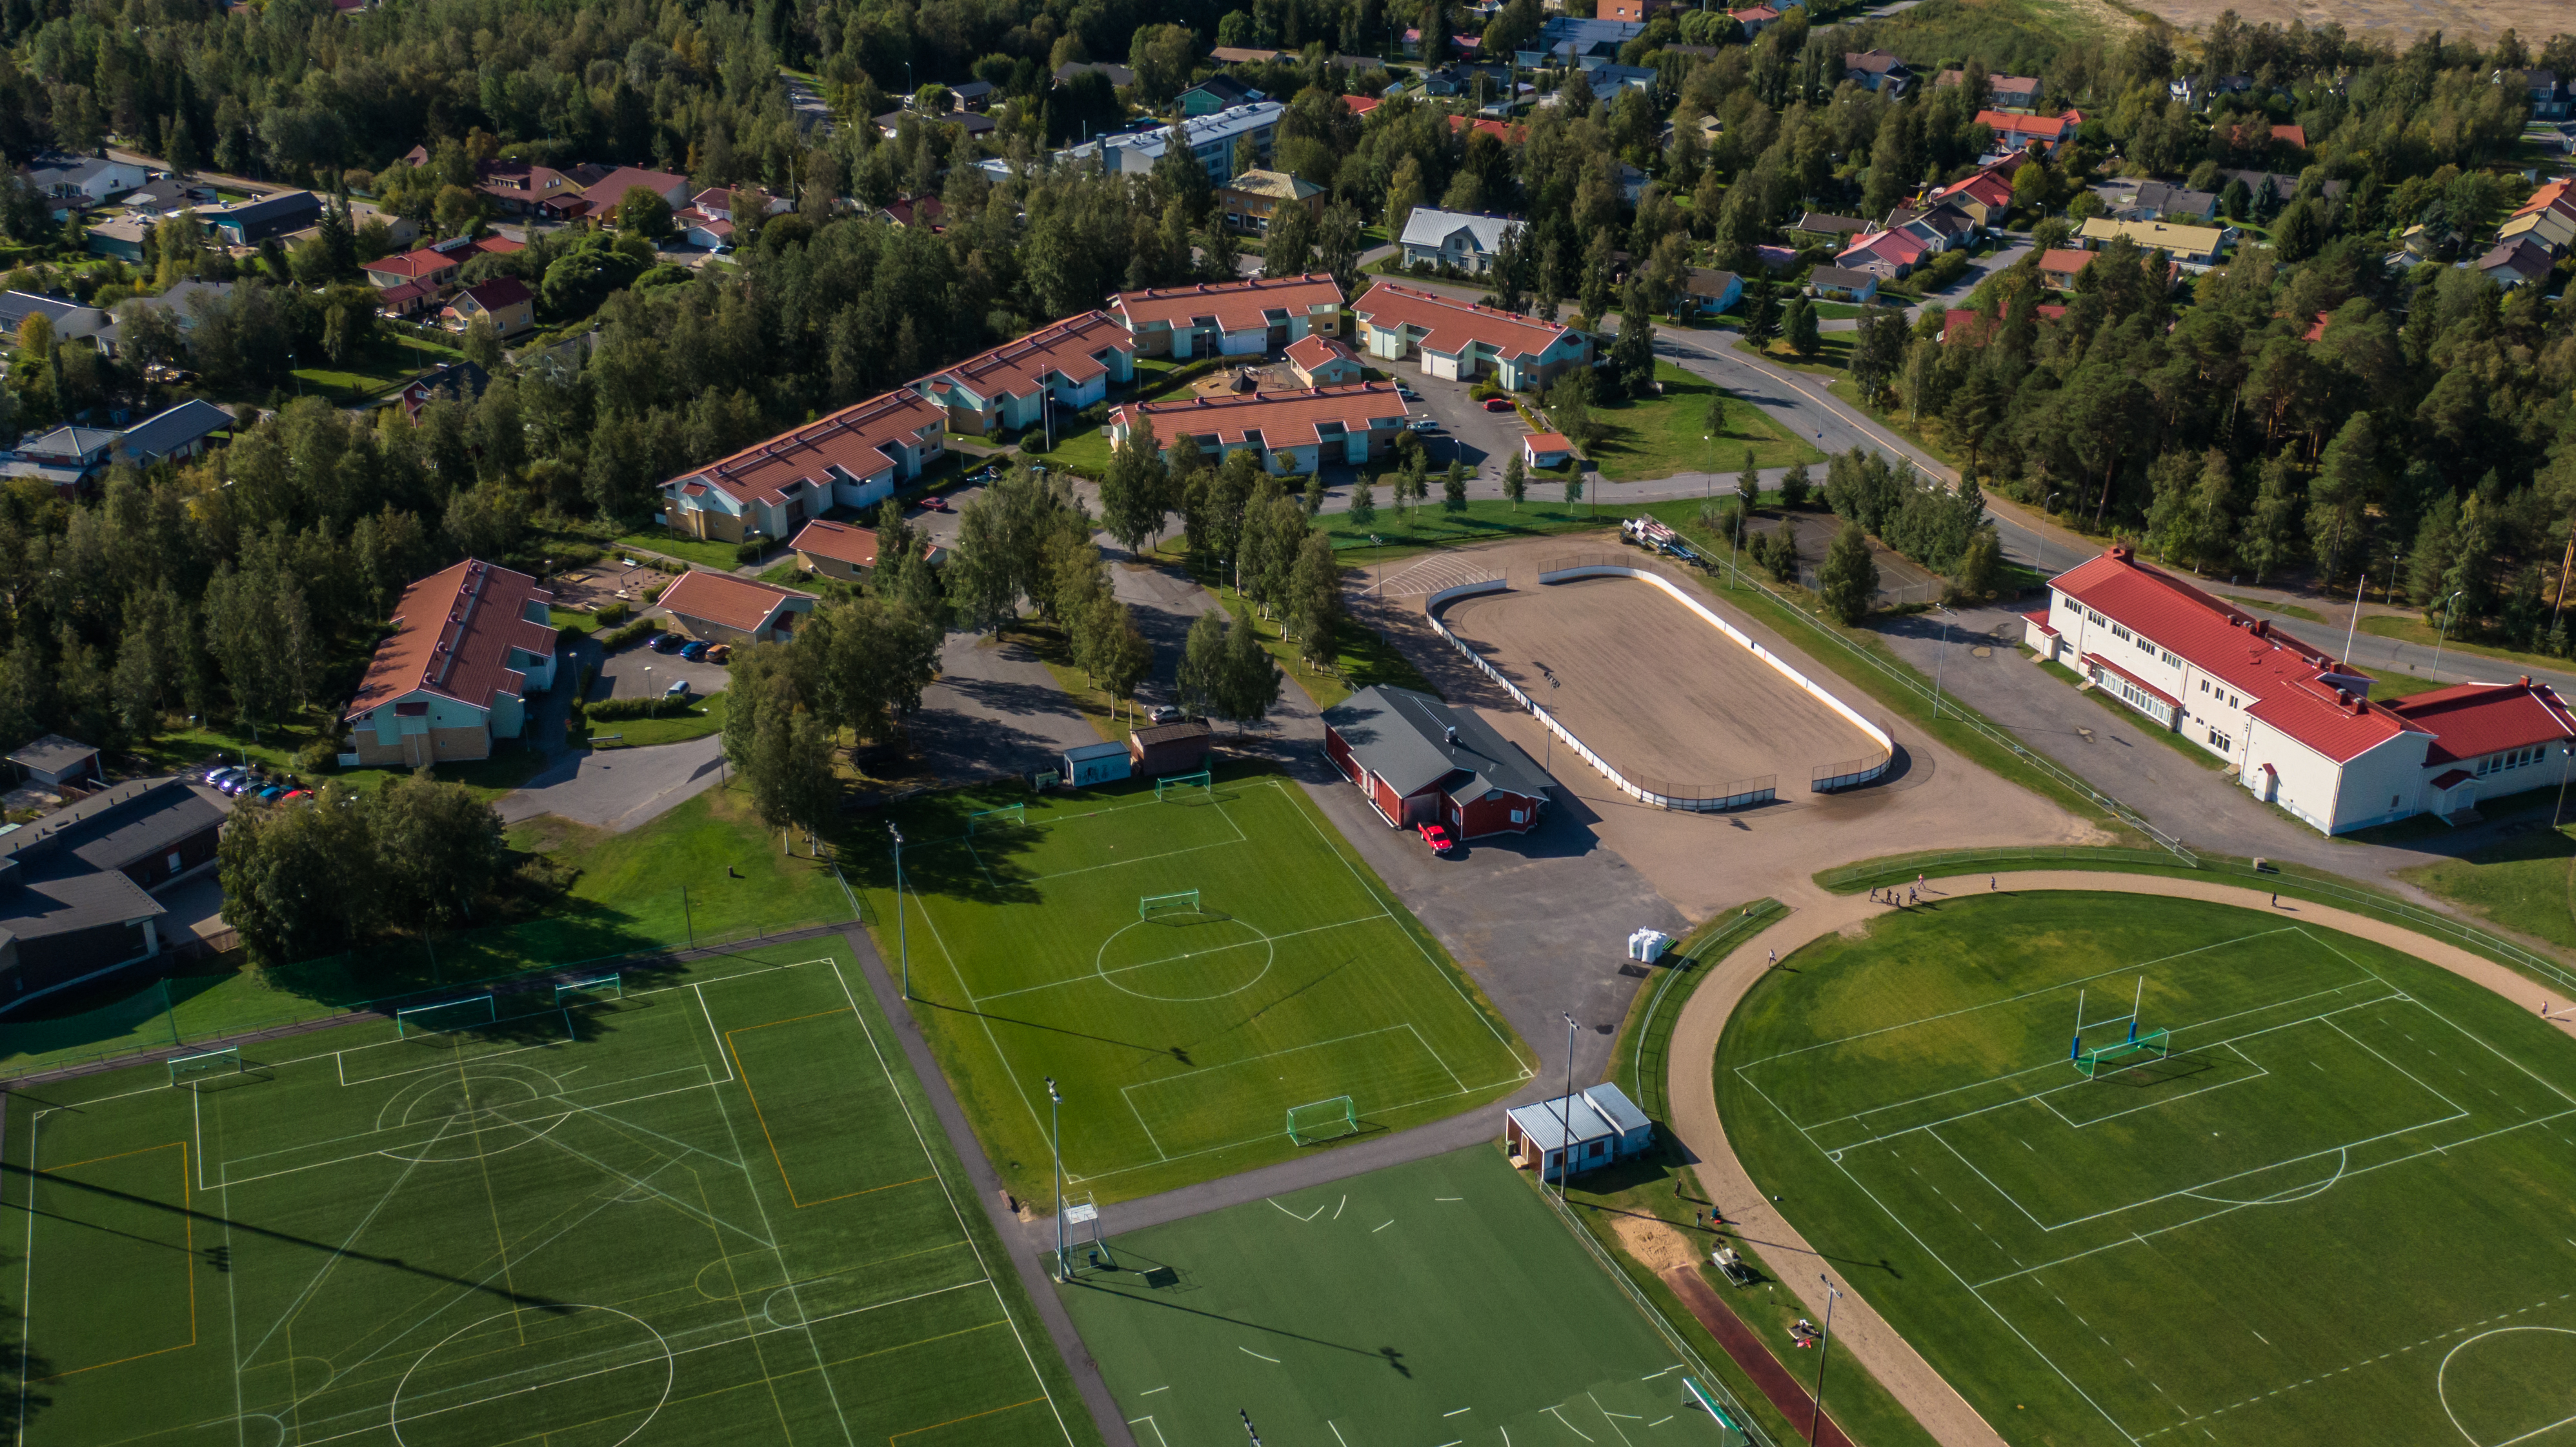 Oulun Pateniemessä lintuperspektiivistä otettu ilmakuva. Vihreitä jalkapallokenttiä ja kaukalo.